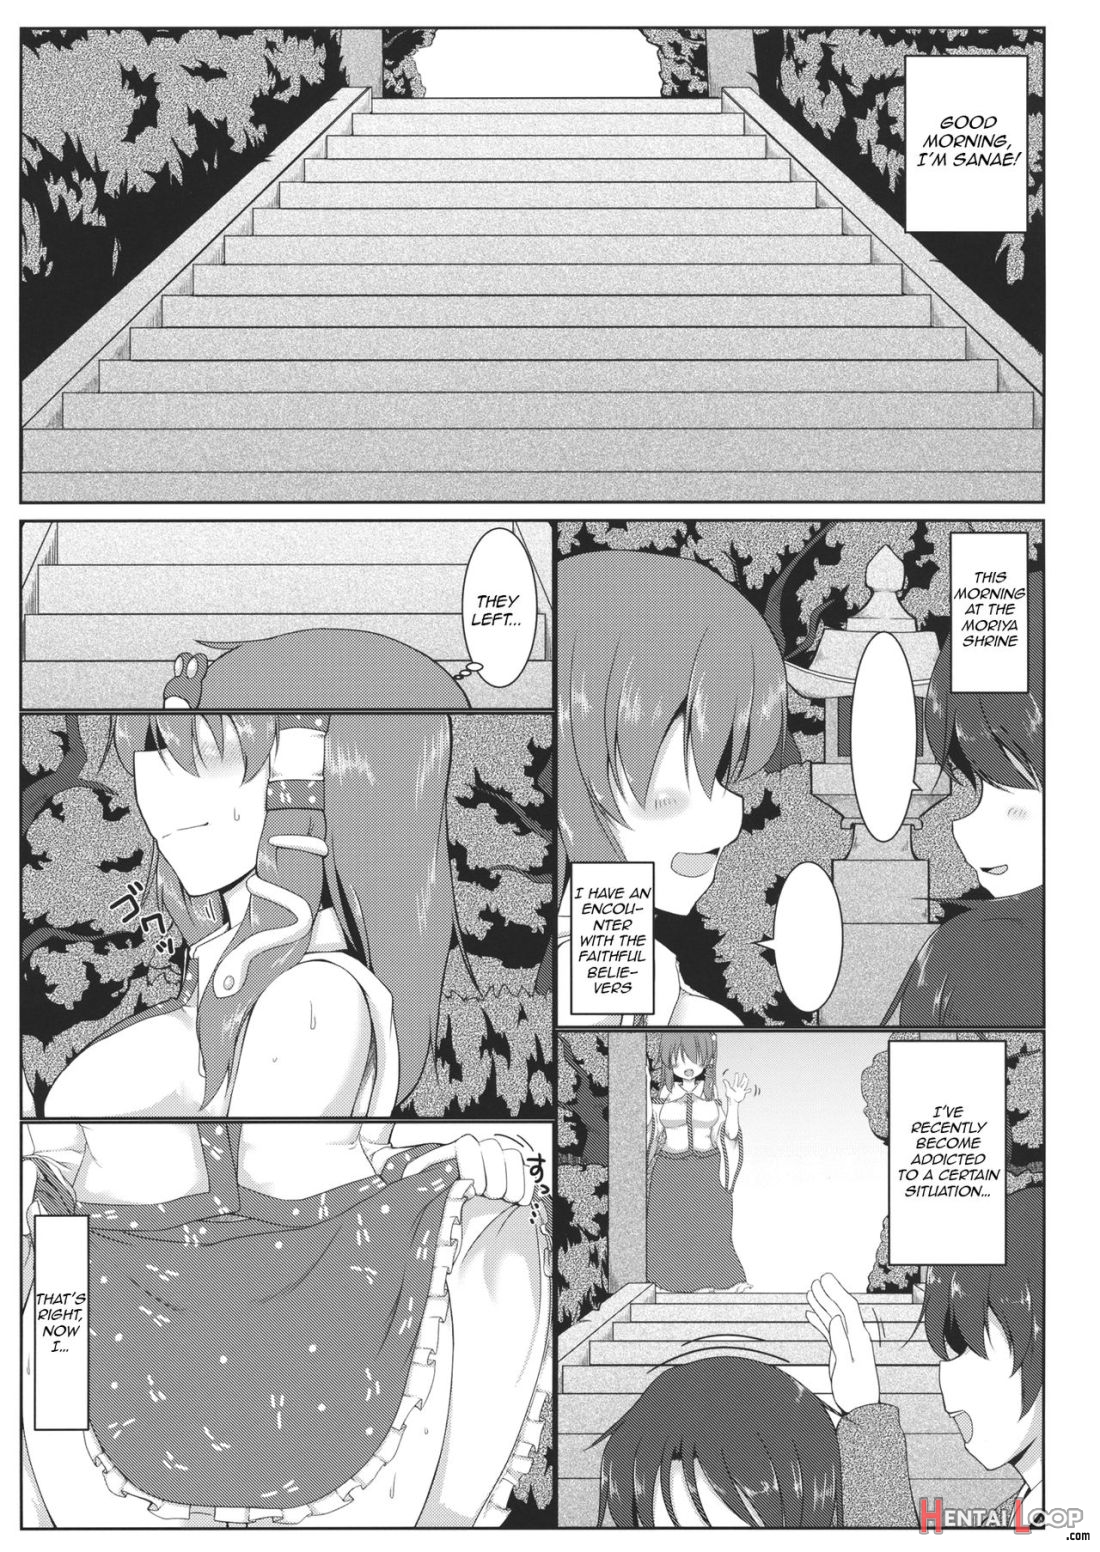 Kochiya Sanae Roshutsuroku page 2